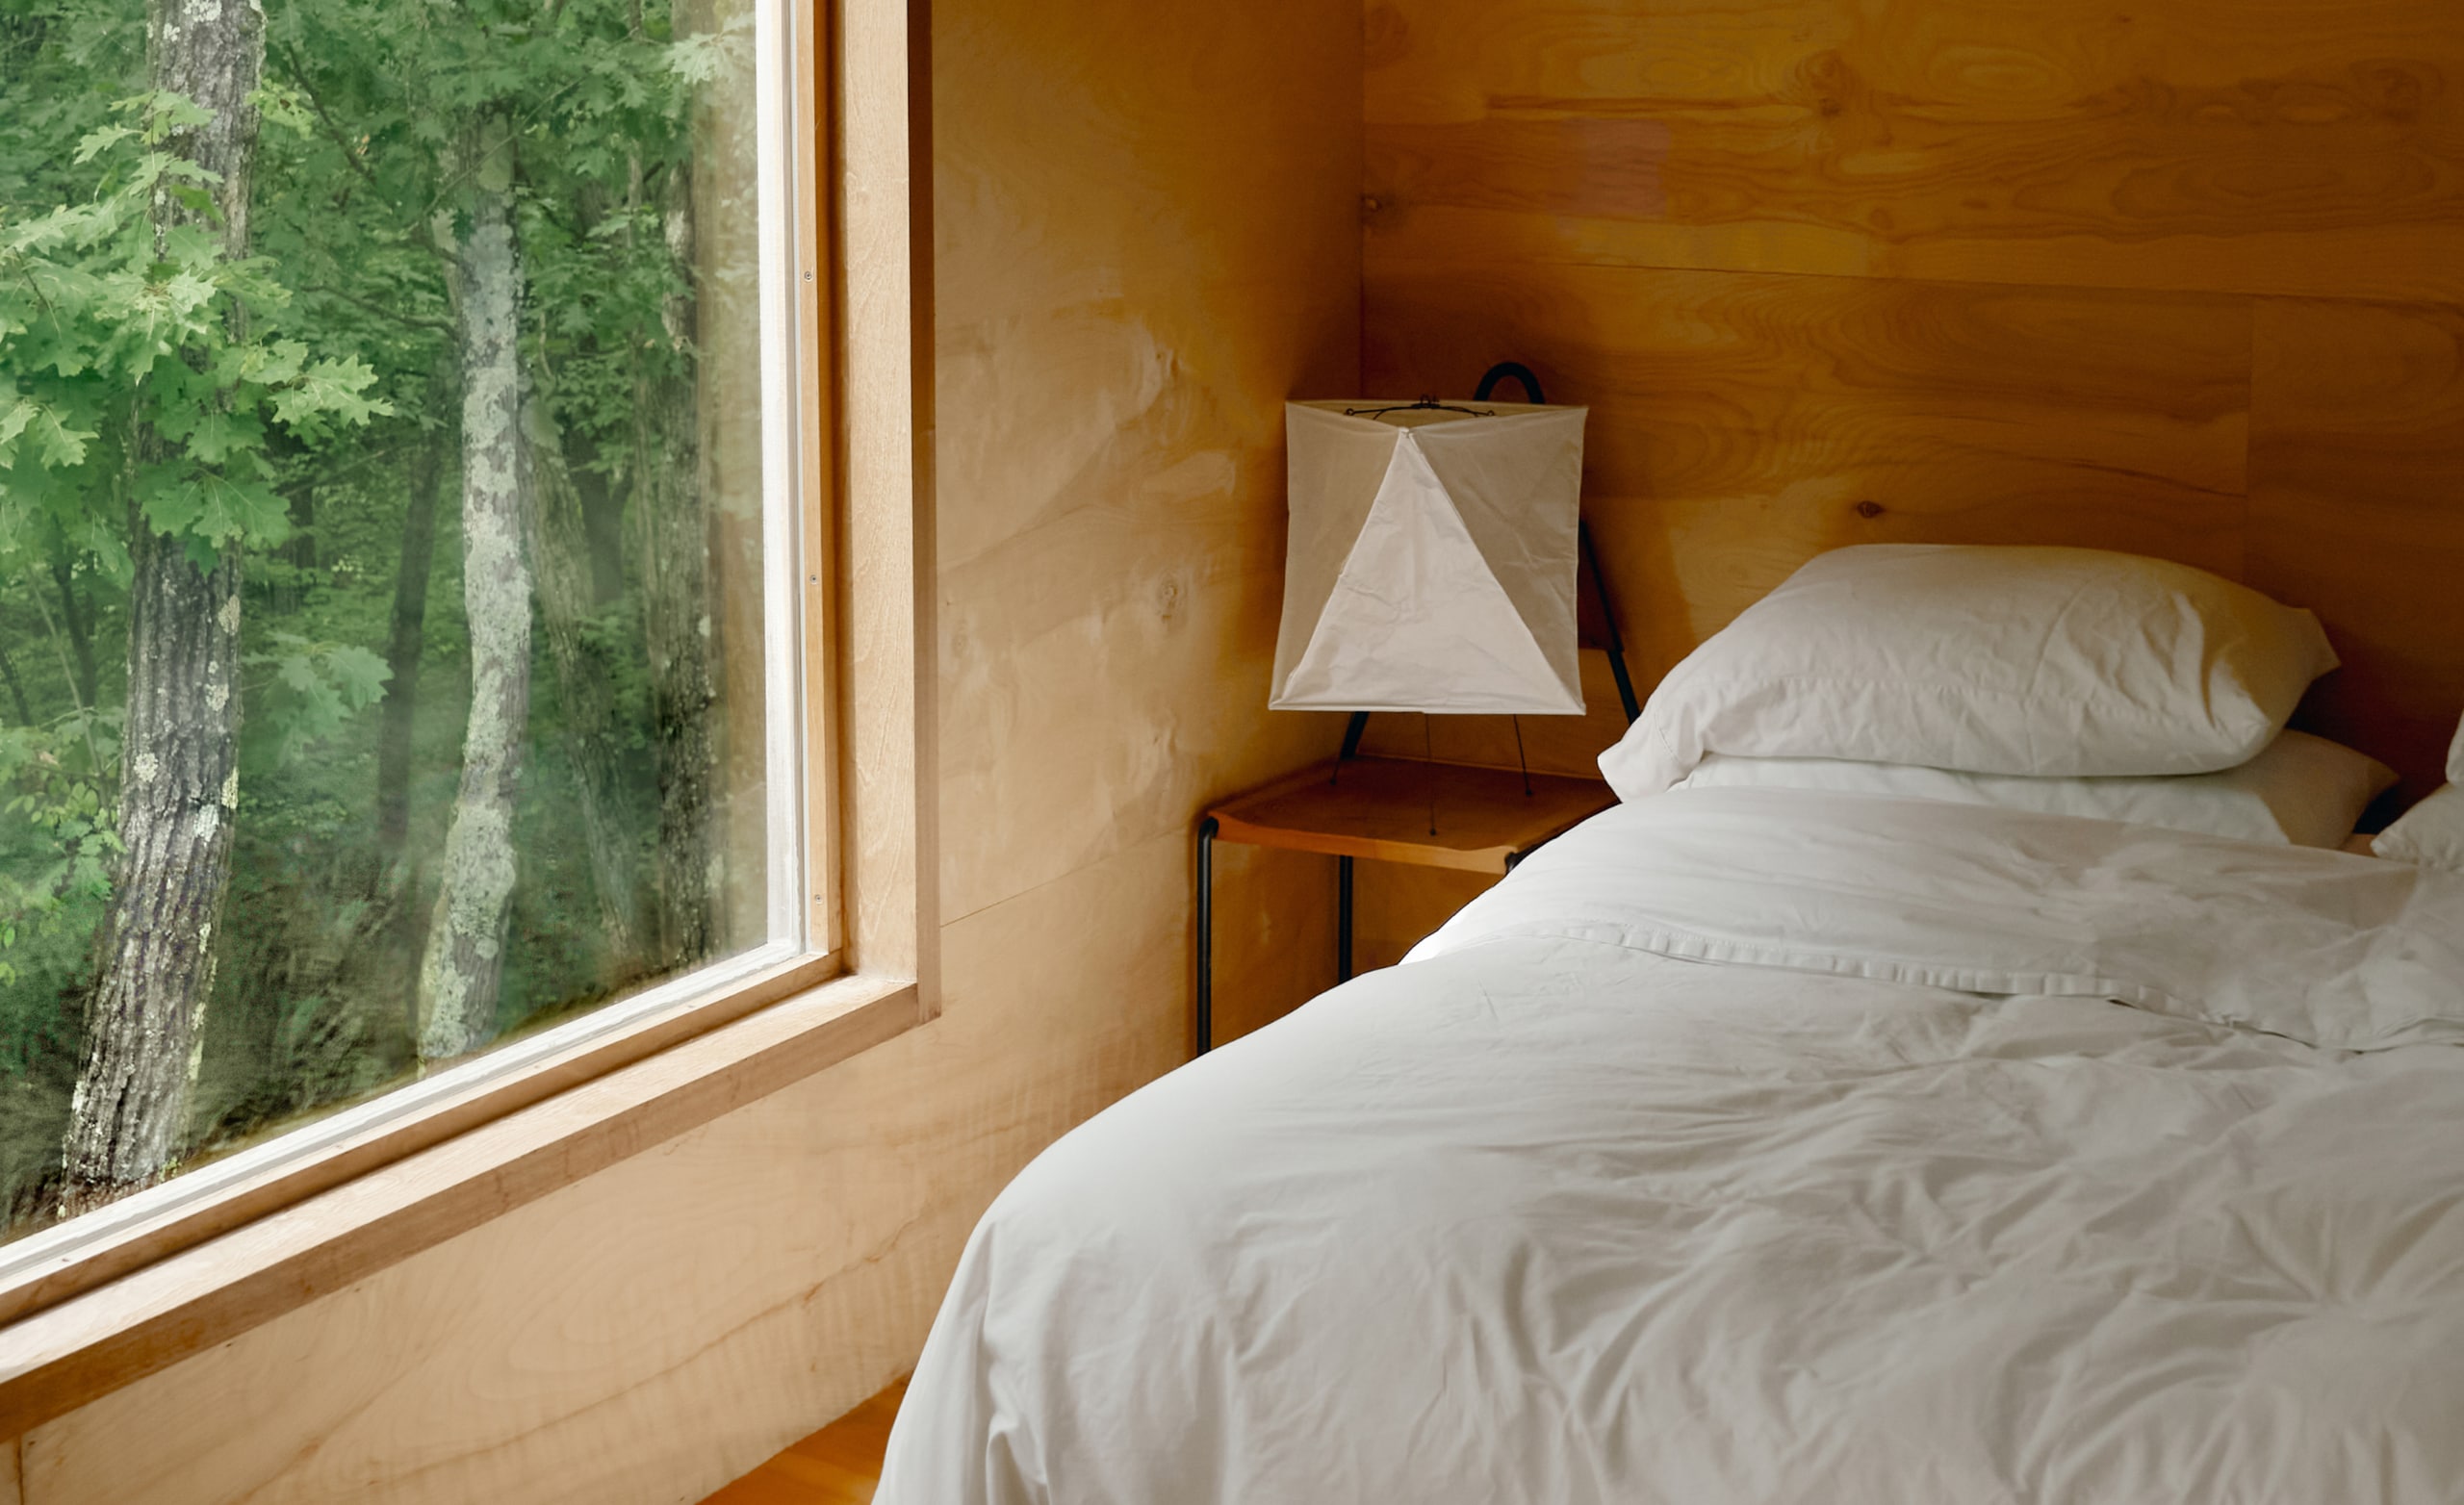 Ένα υπνοδωμάτιο με λευκά σεντόνια σε ένα φρεσκοστρωμένο κρεβάτι και ένα μεγάλο παράθυρο από το οποίο φαίνονται τα δέντρα έξω.